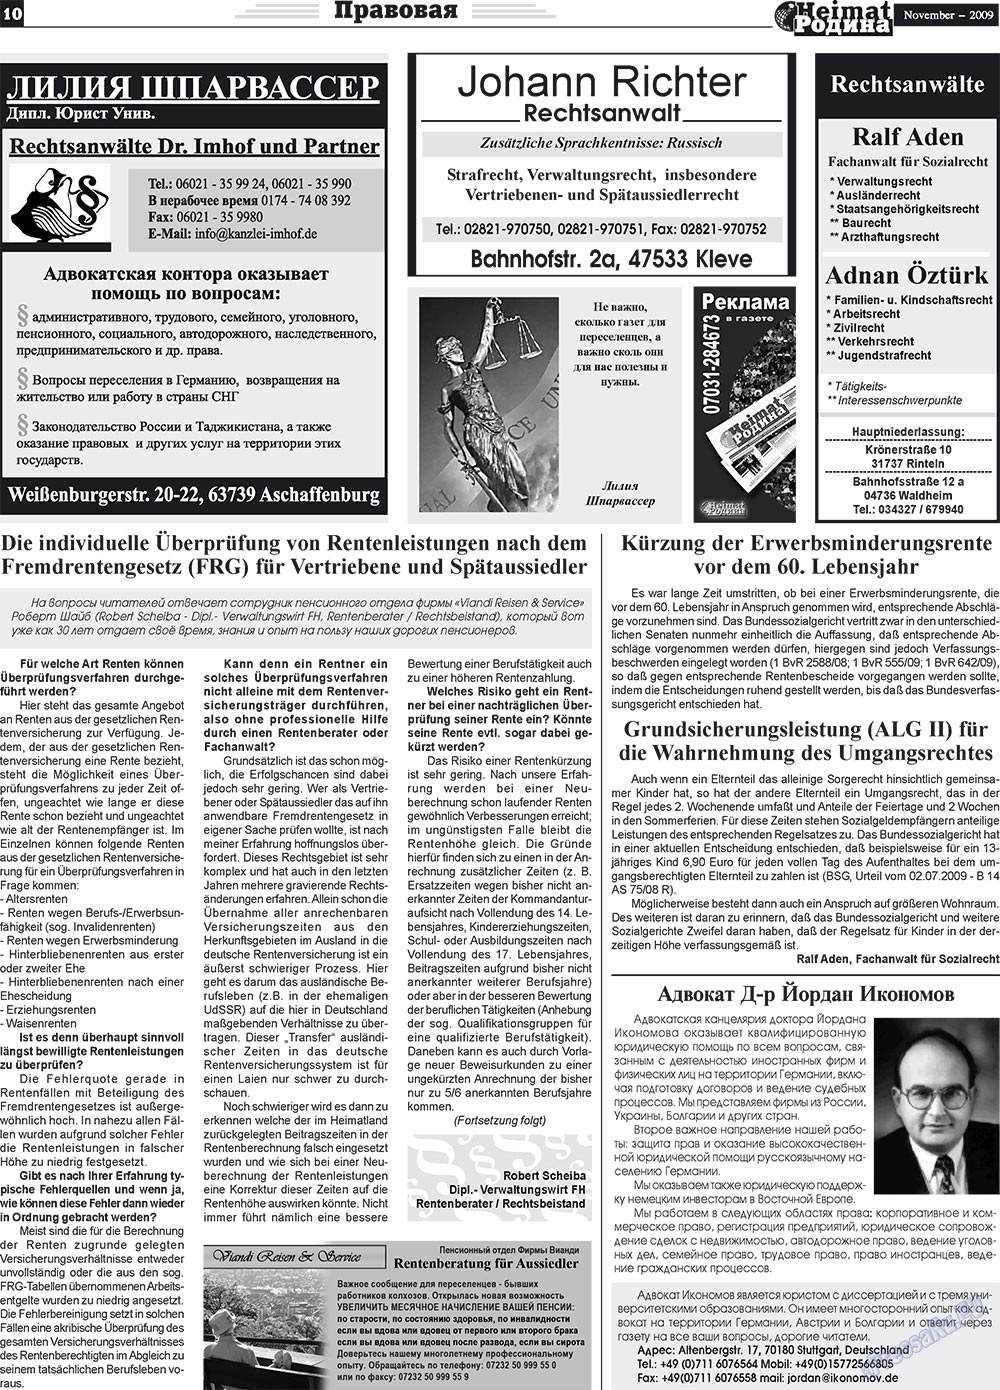 Heimat-Родина (газета). 2009 год, номер 11, стр. 10